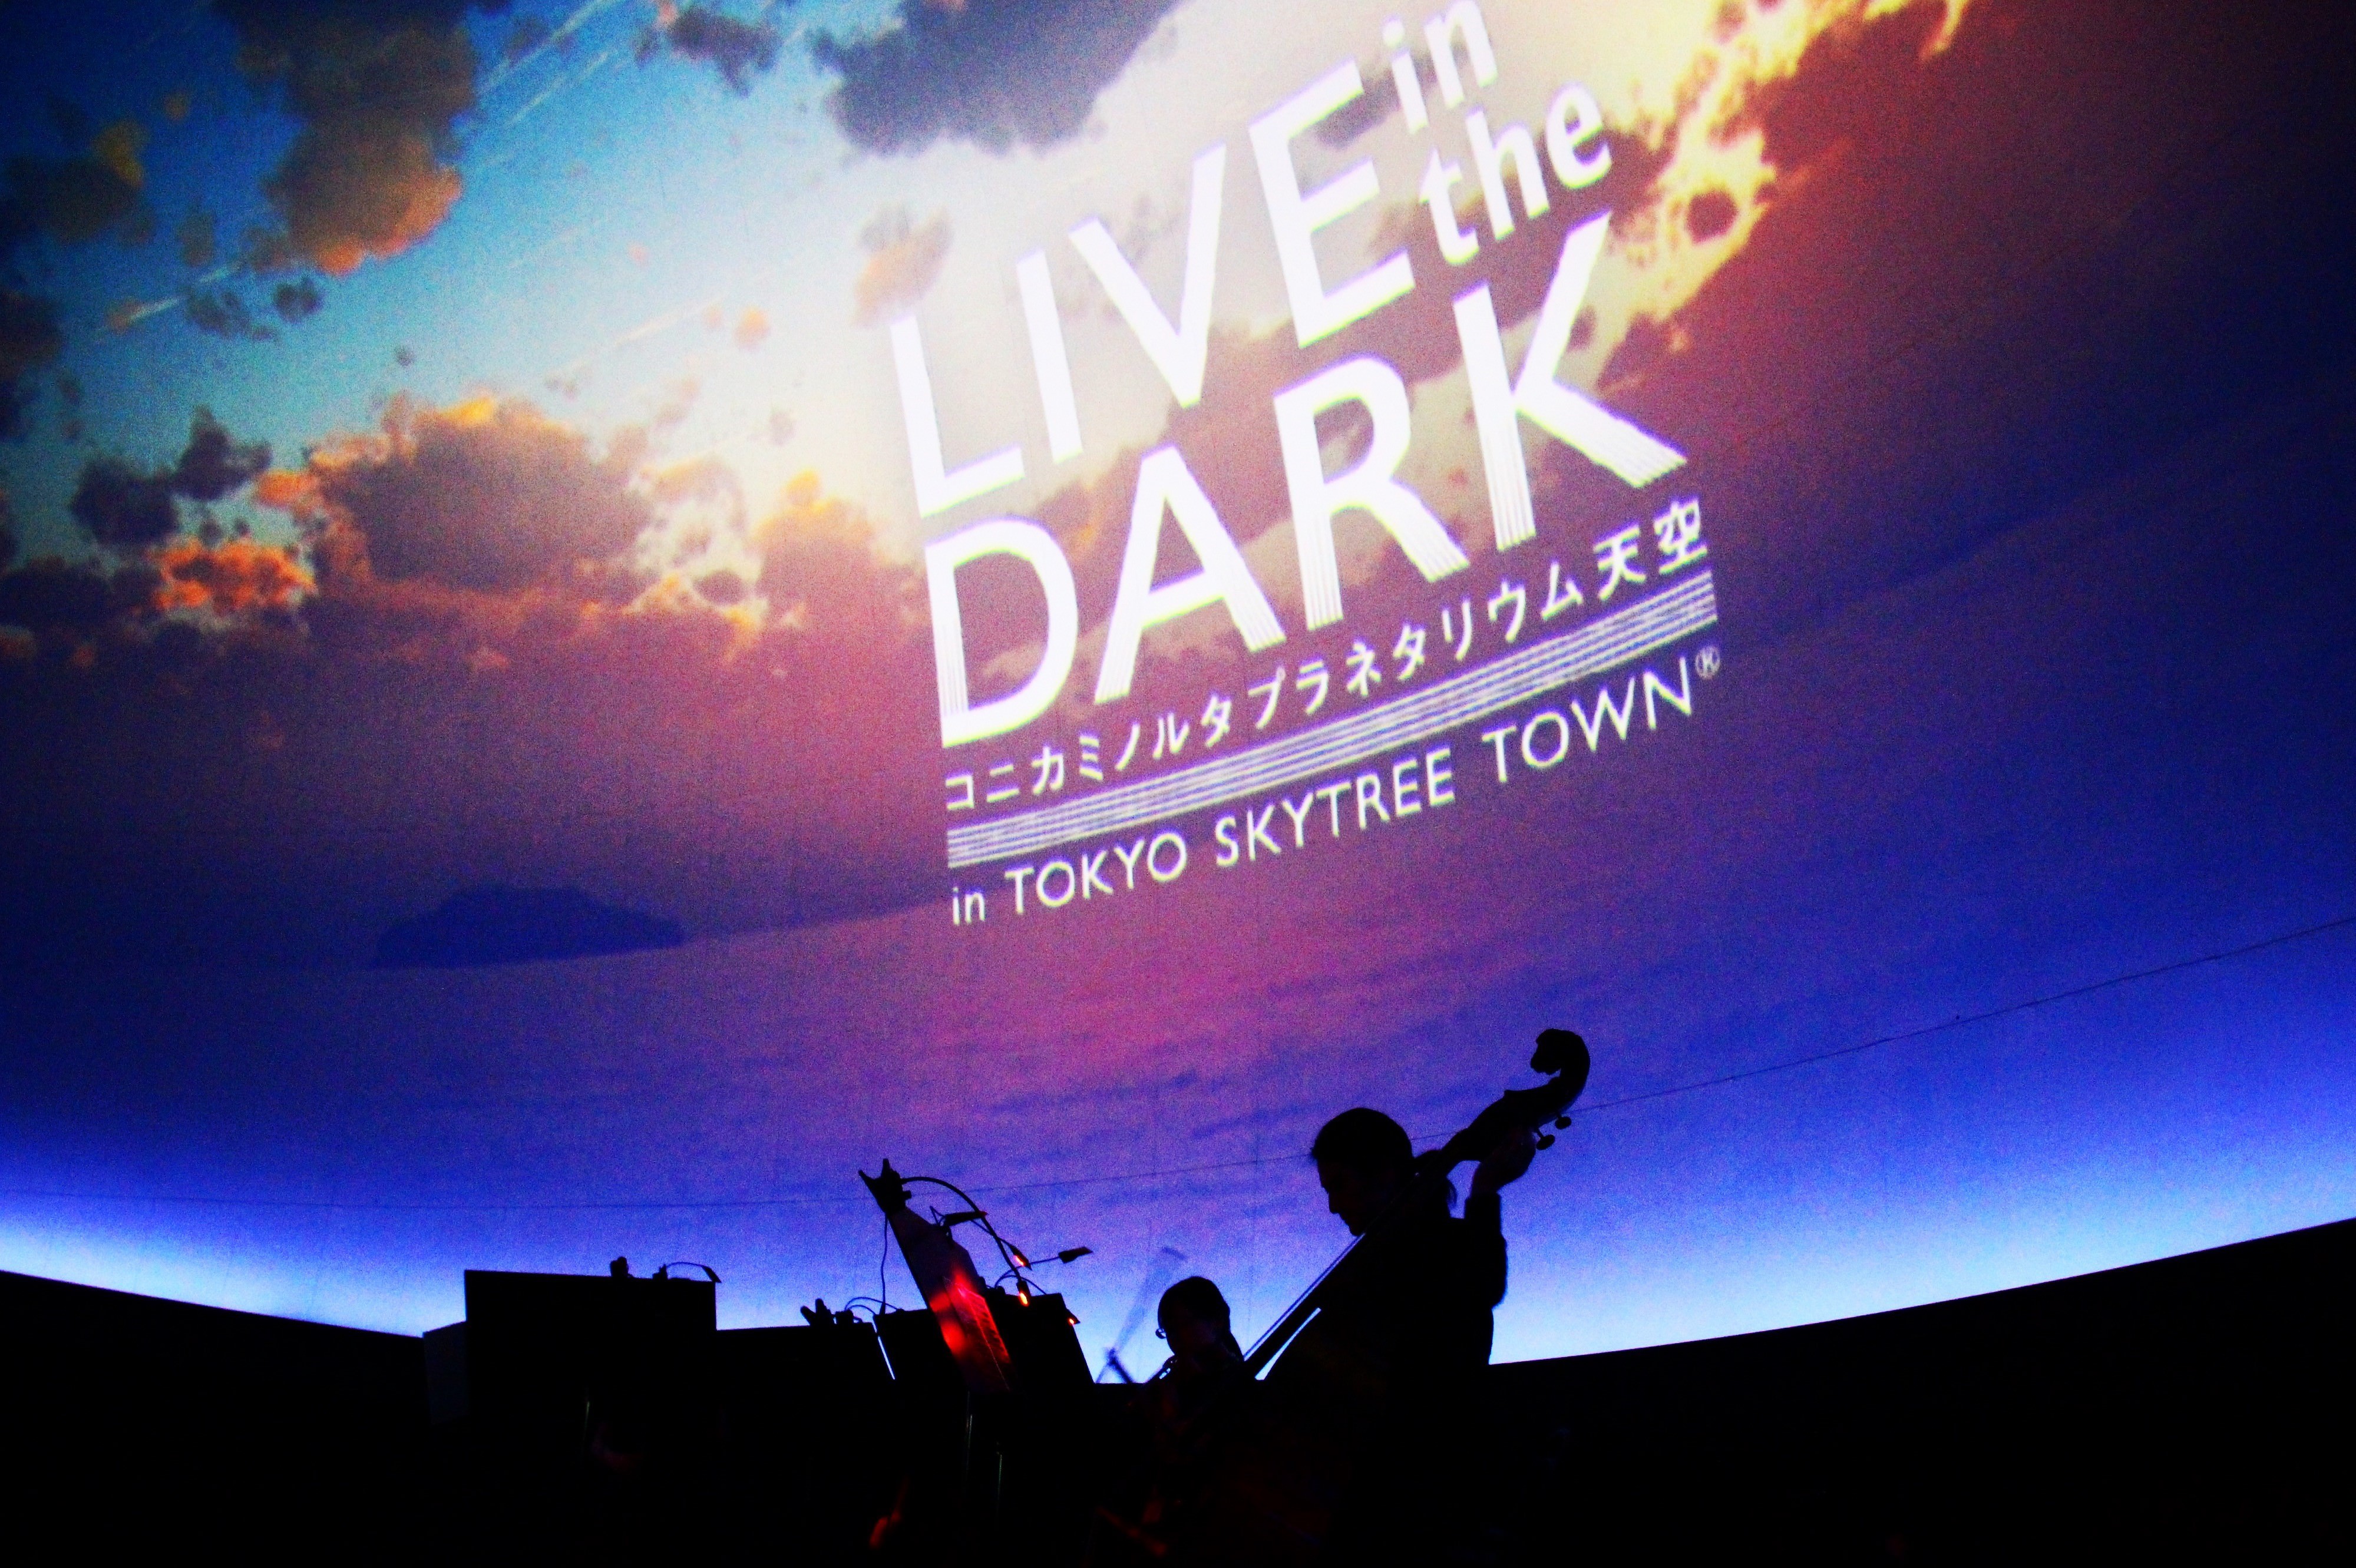 プラネタリウムで楽しむクラシックの生演奏
『LIVE in the DARK』シリーズ上演再開！！